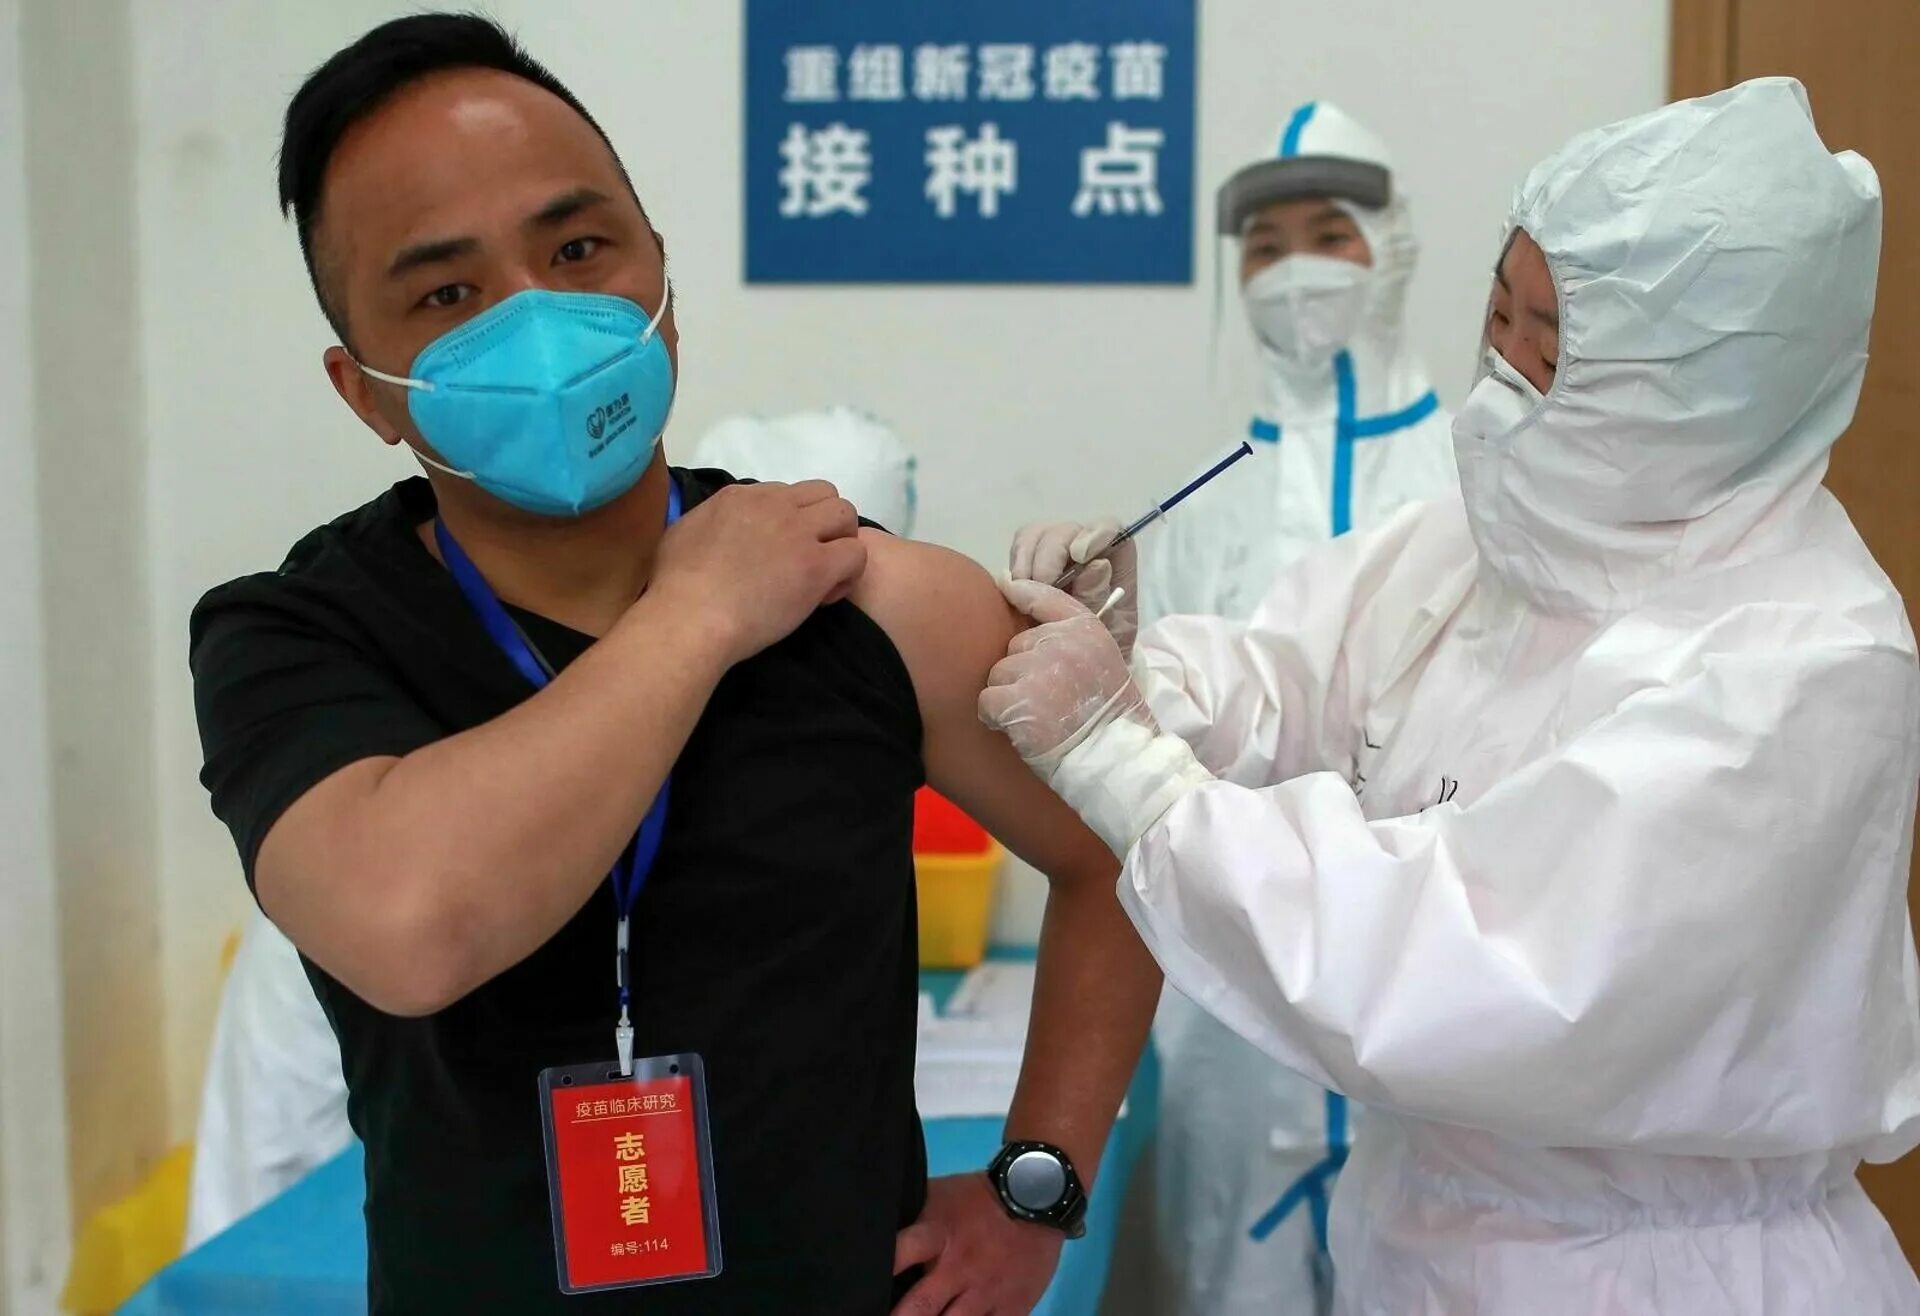 Covid-19 вакцина китайская. Вакцинация в Китае. Здравоохранение в Китае. Ковид в Китае вакцинация.